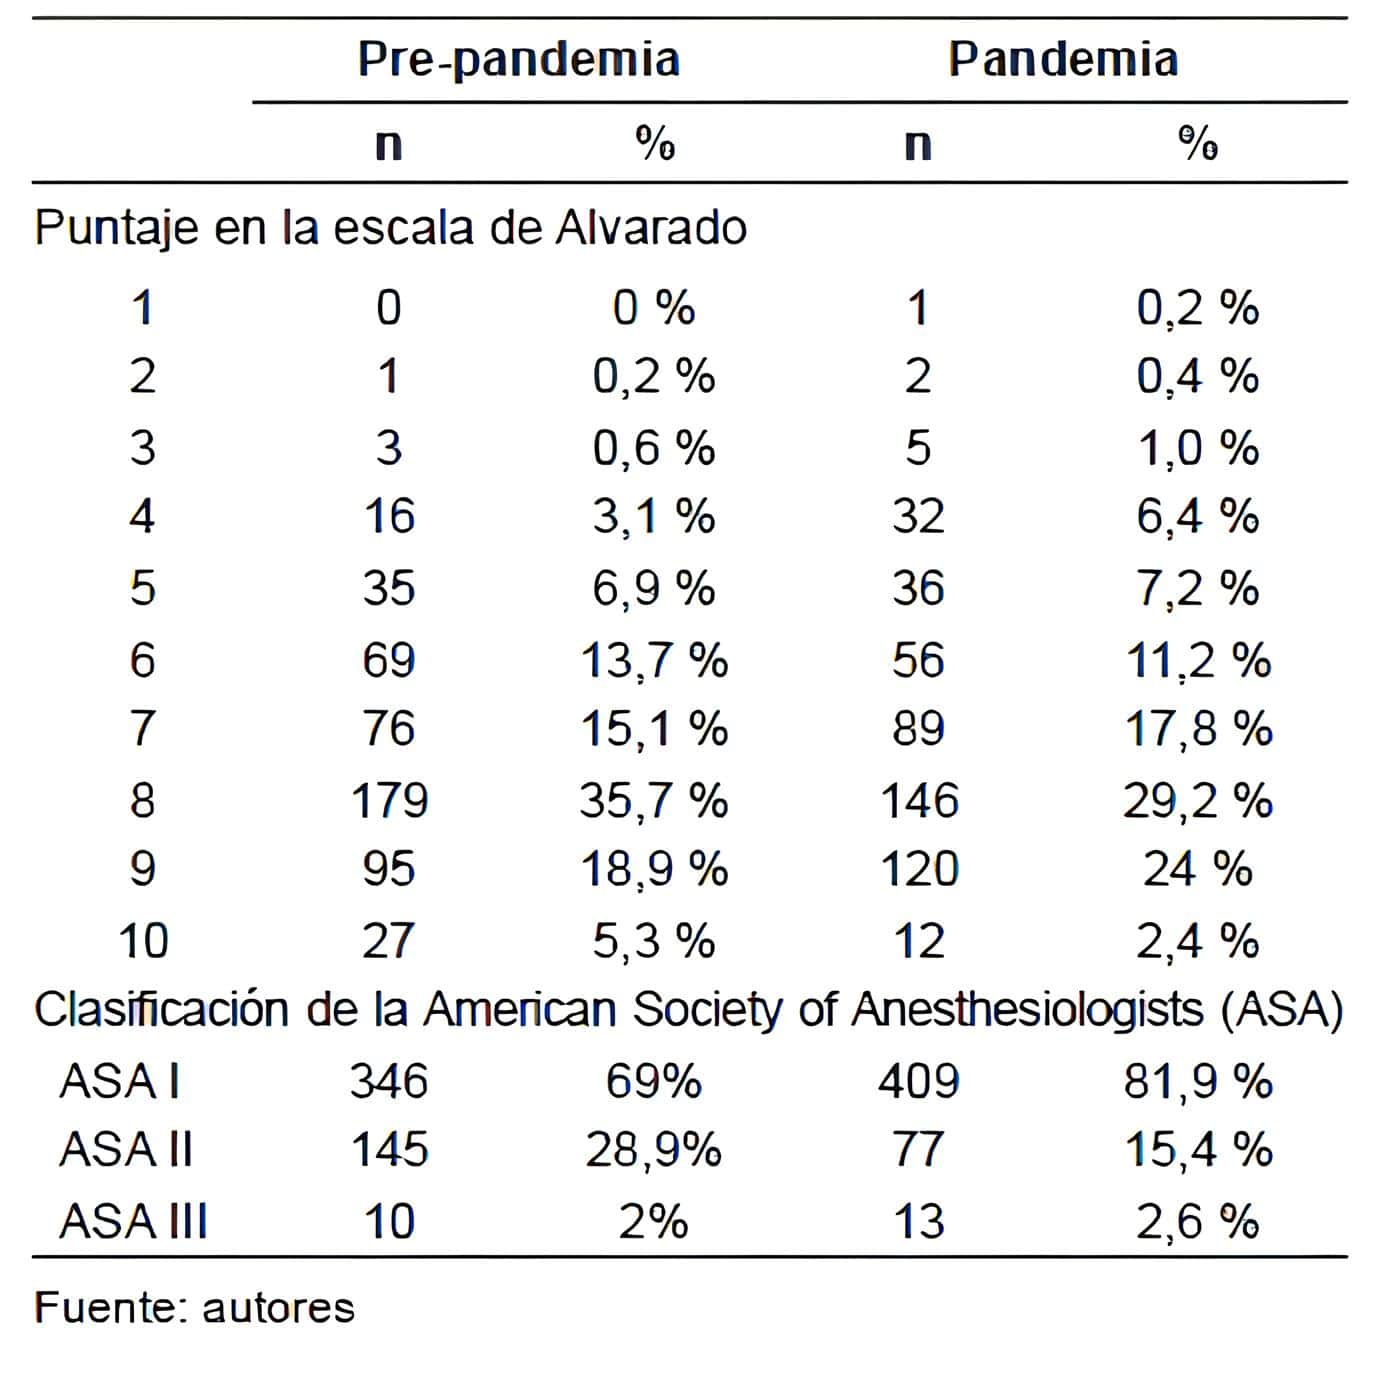 Pacientes intervenidos por apendicitis aguda en el
periodo pre-pandemia y pandemia